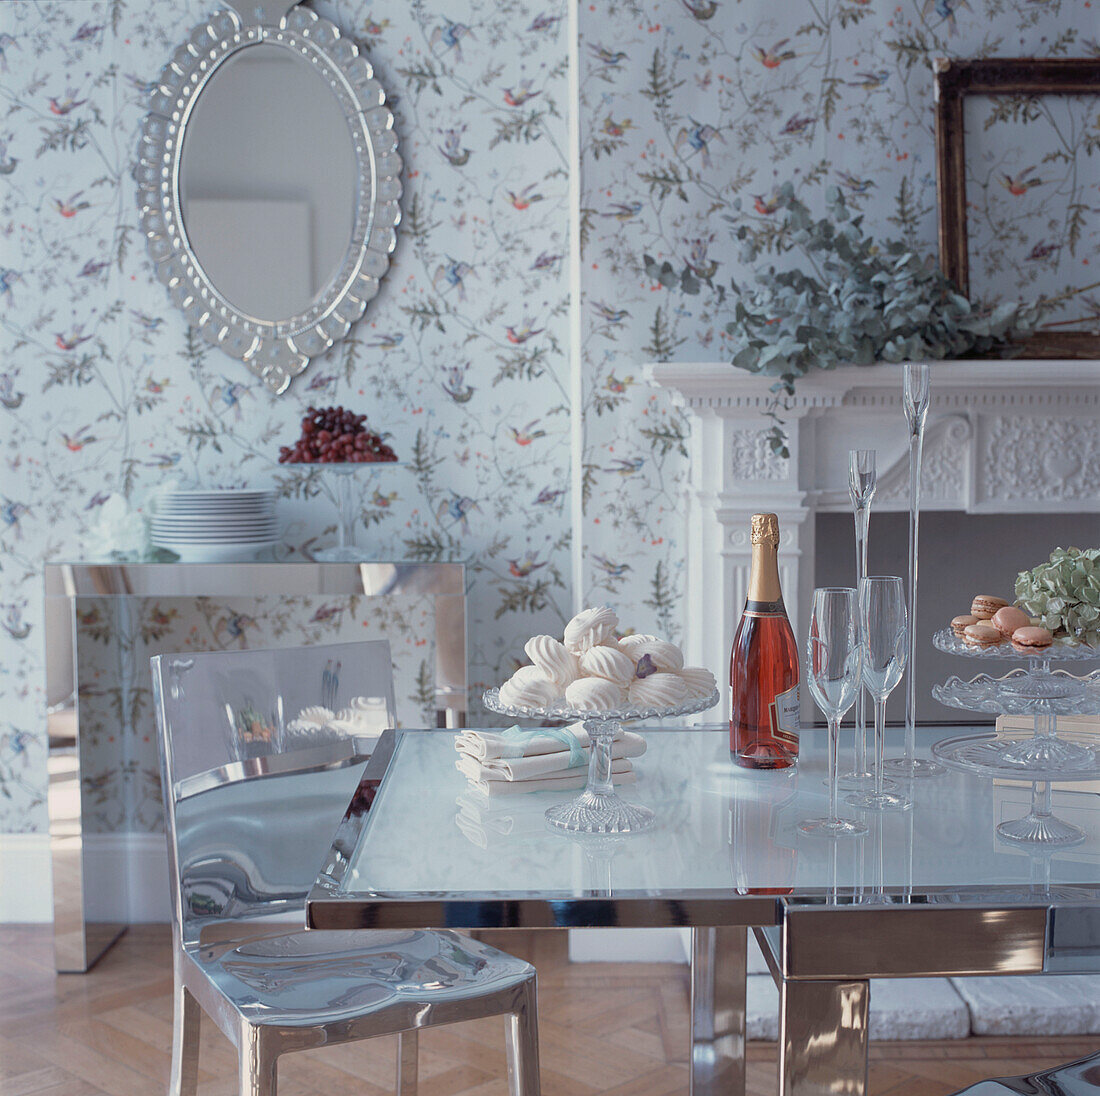 Modernes Esszimmer mit Blumentapete und gedecktem Mittagstisch